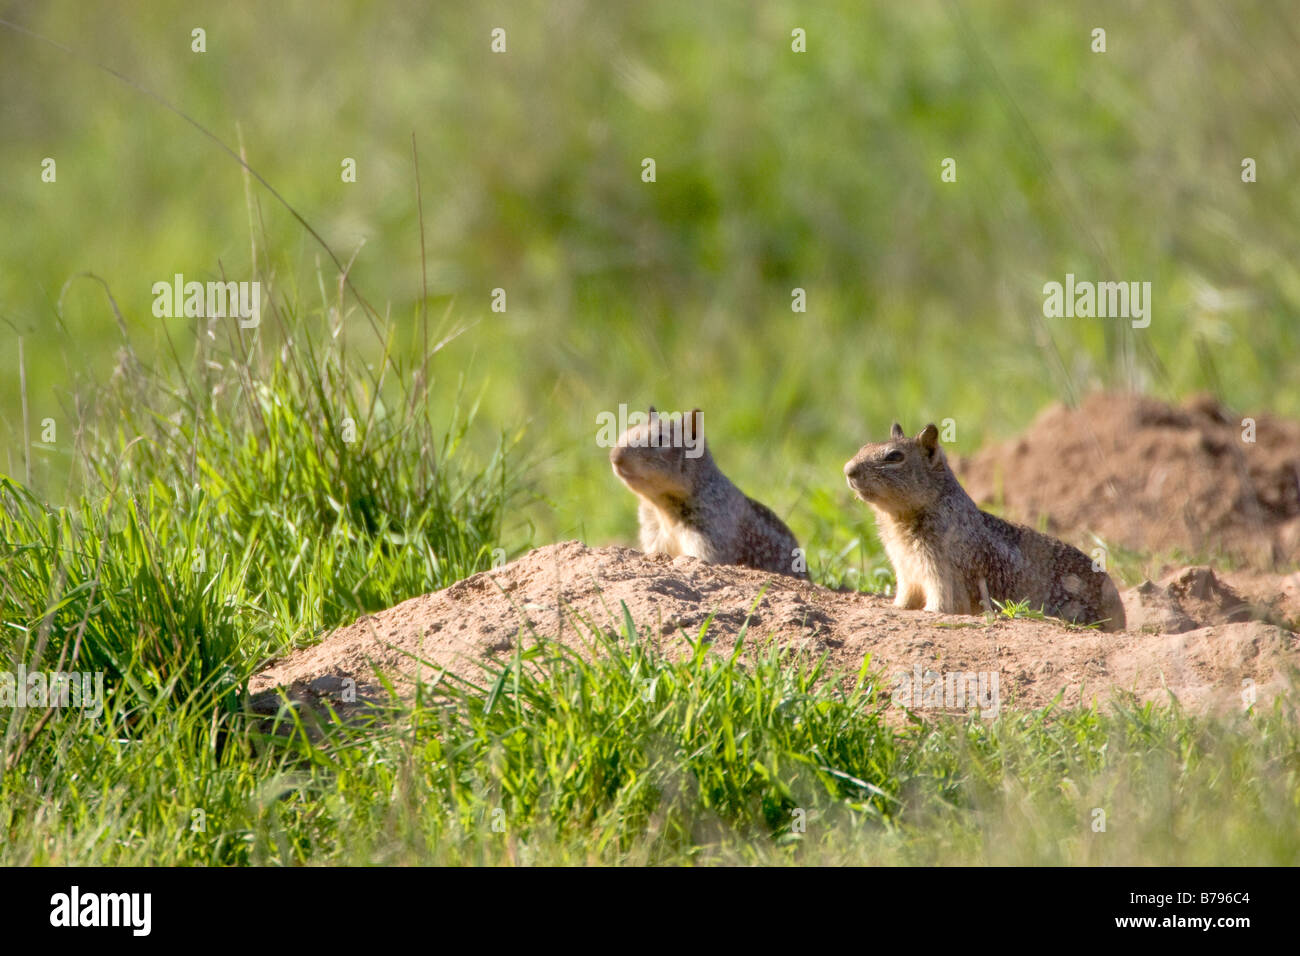 Ground Squirrels Spermophilus beecheyi Stock Photo